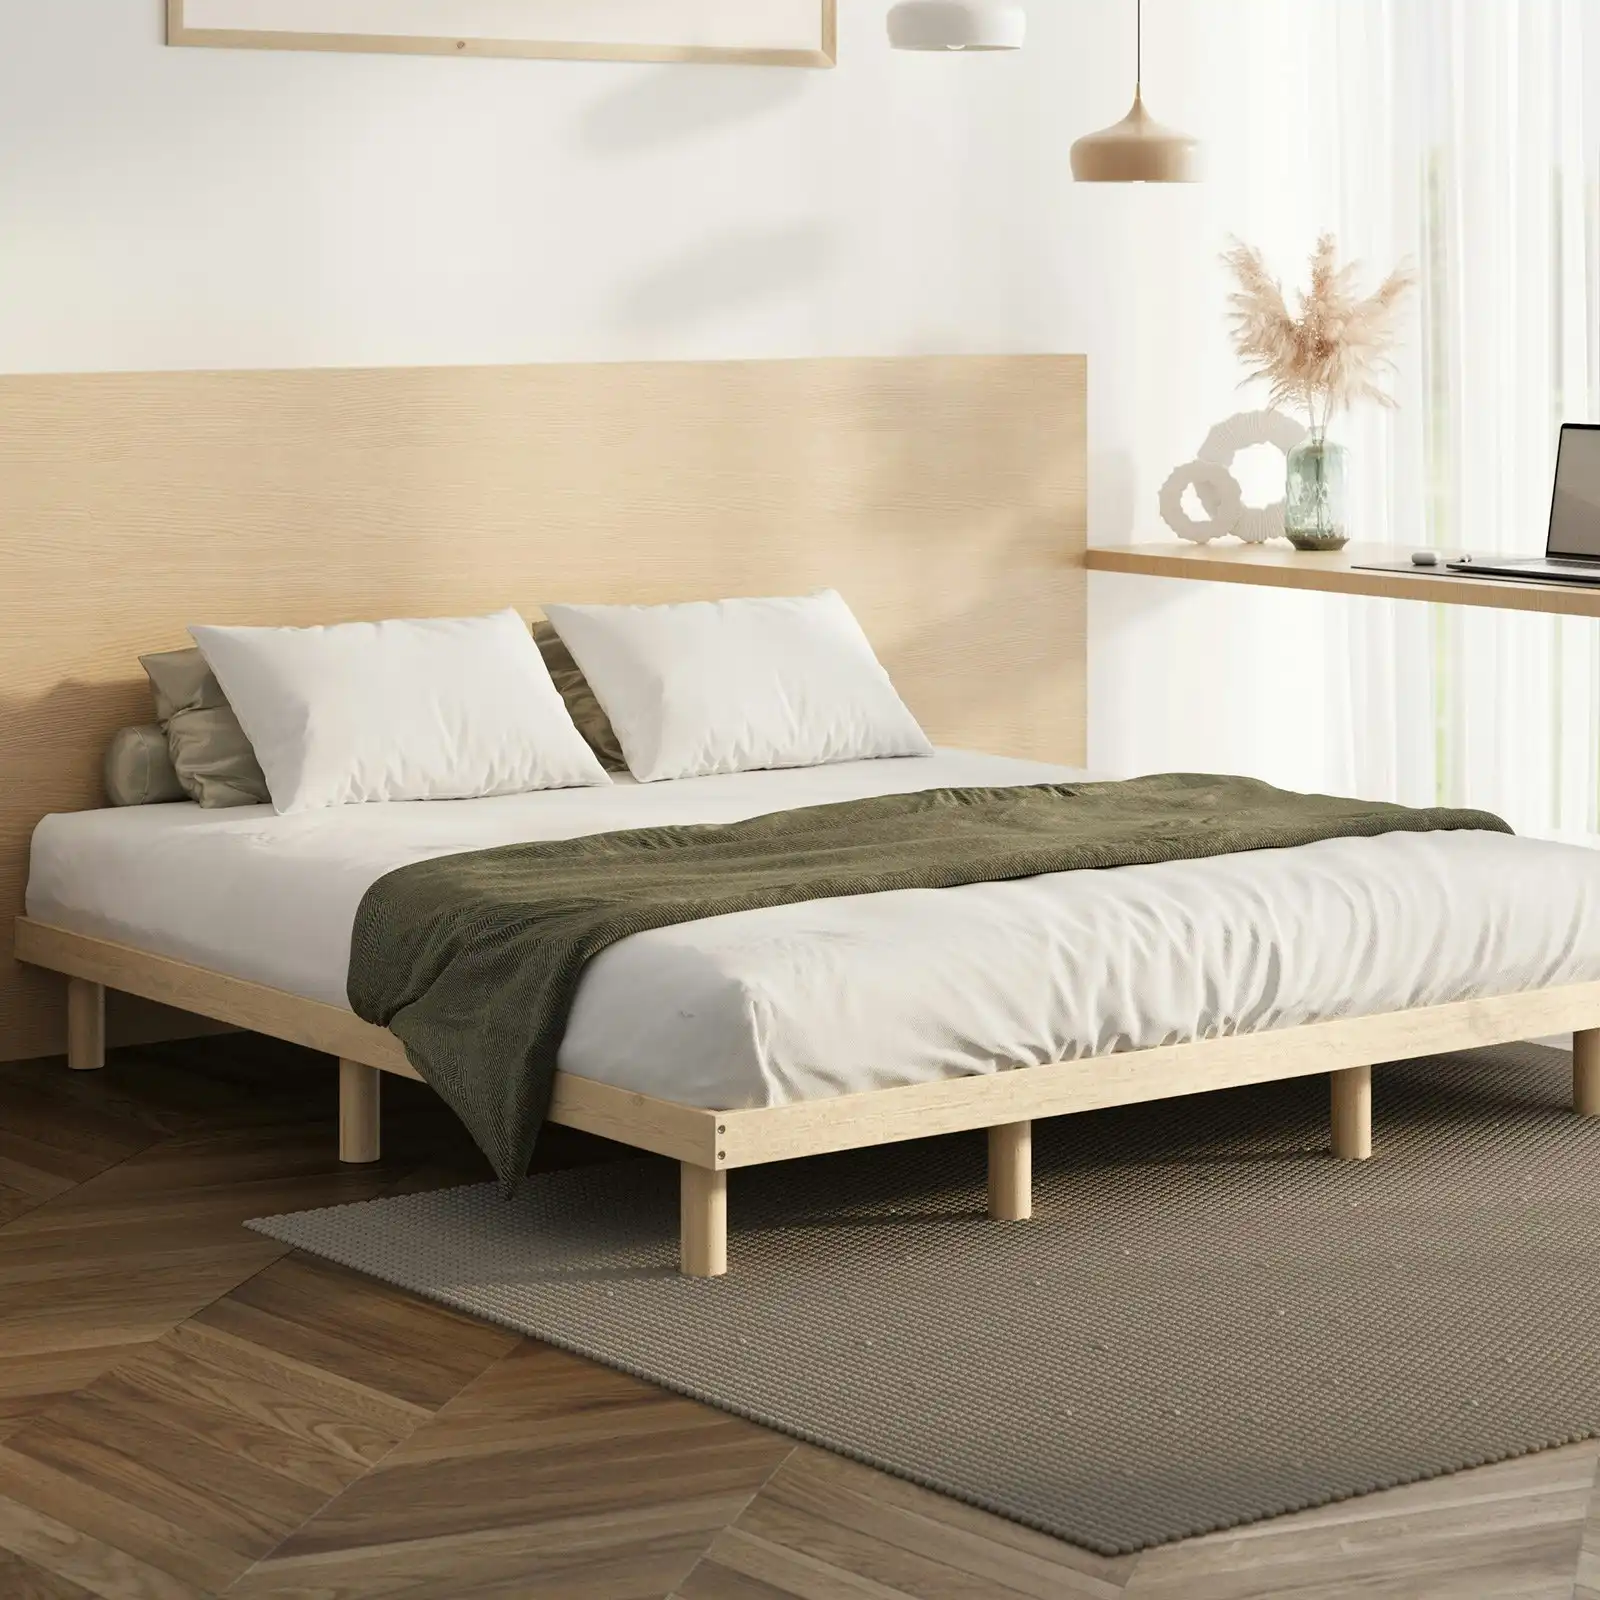 Oikiture Bed Frame King Size Wooden Base Bed Platform